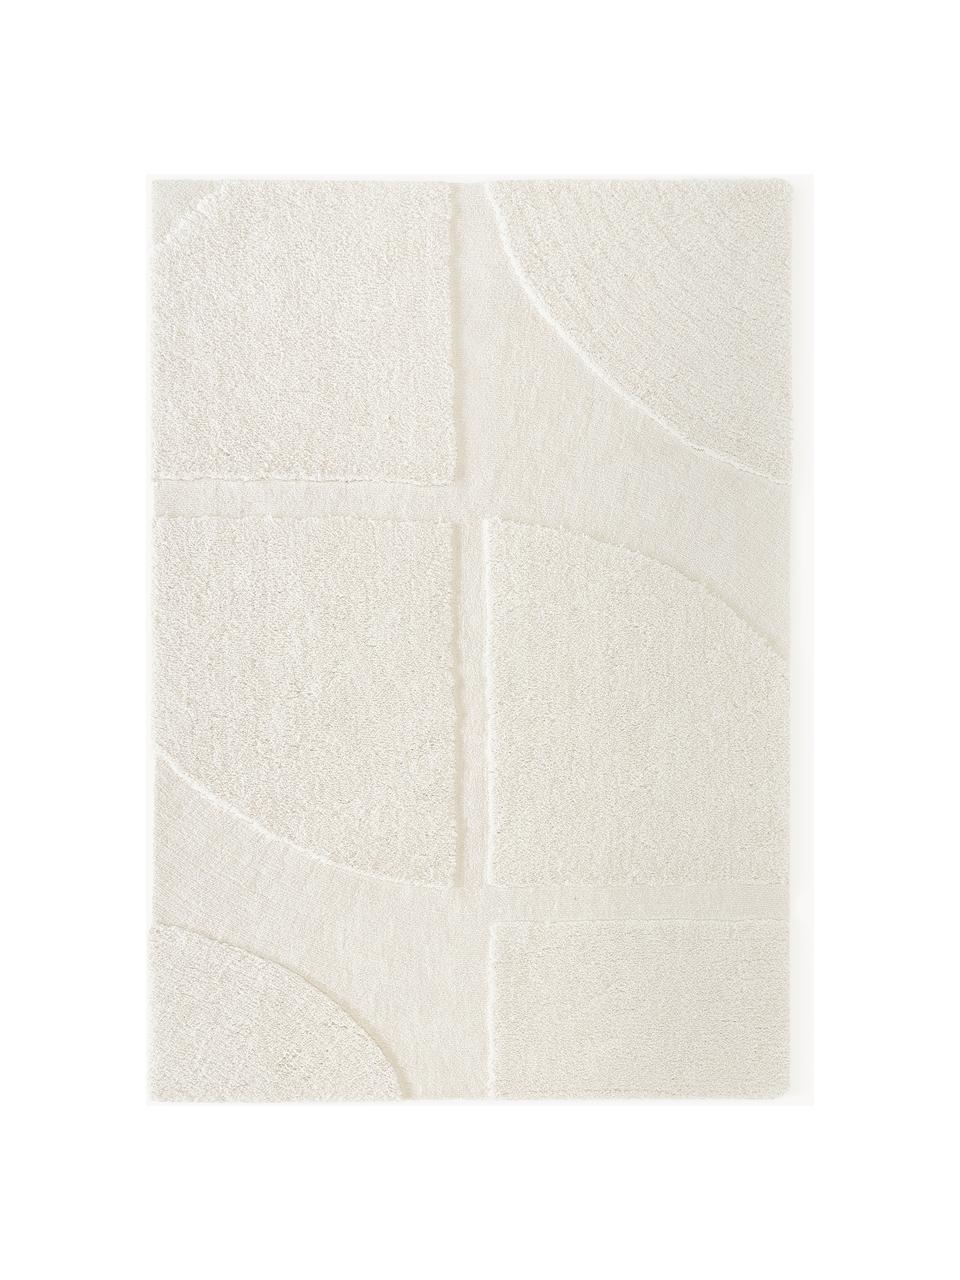 Tapis moelleux à poils longs texturé Jade, Blanc crème, larg. 120 x long. 180 cm (taille S)